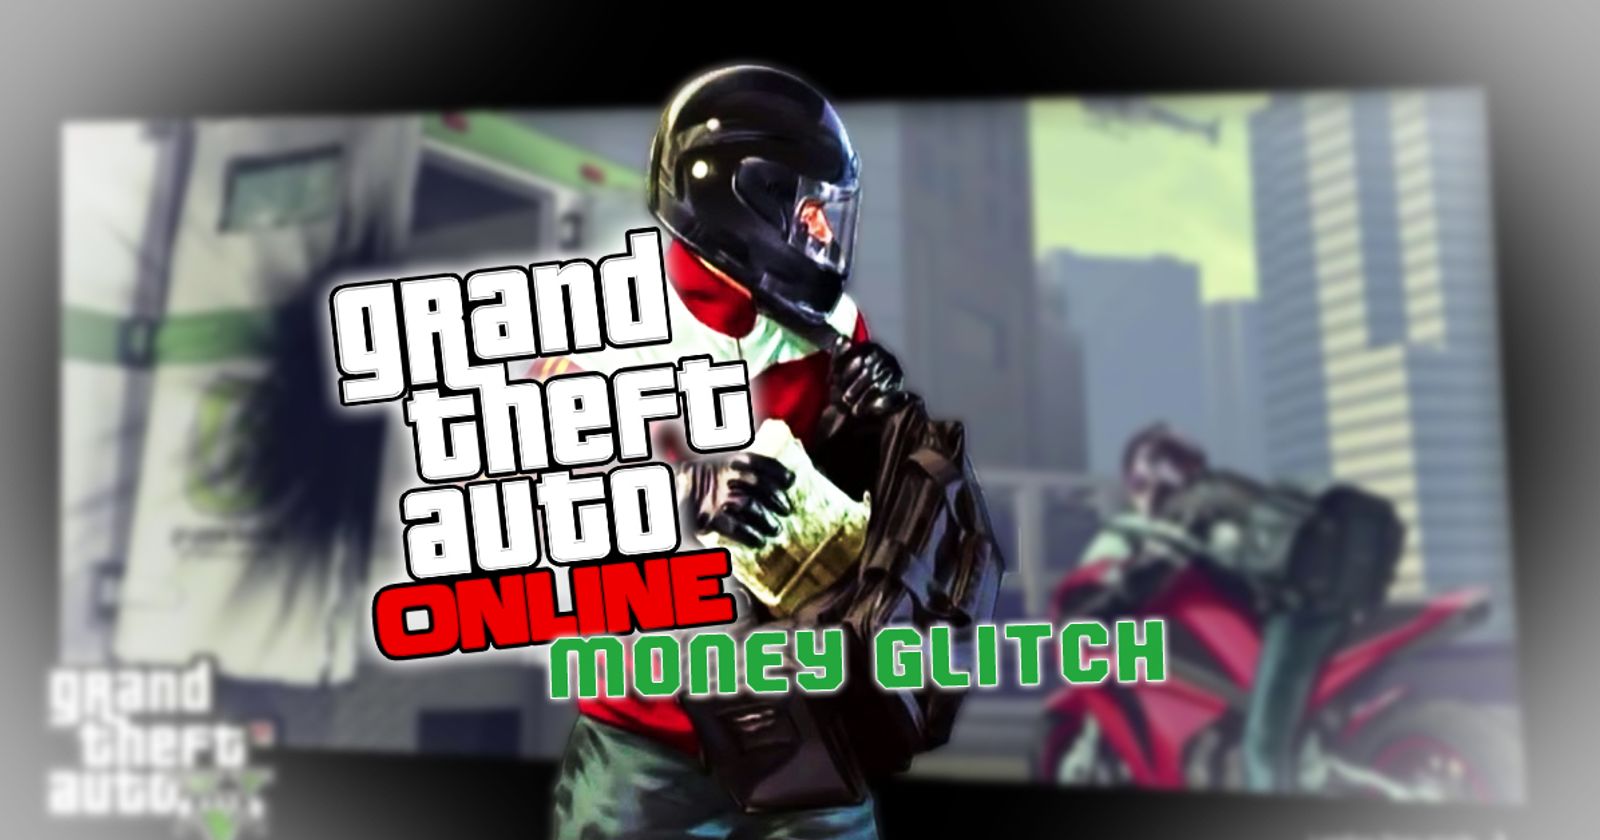 5 best GTA Online money glitches that still work (May 2023)